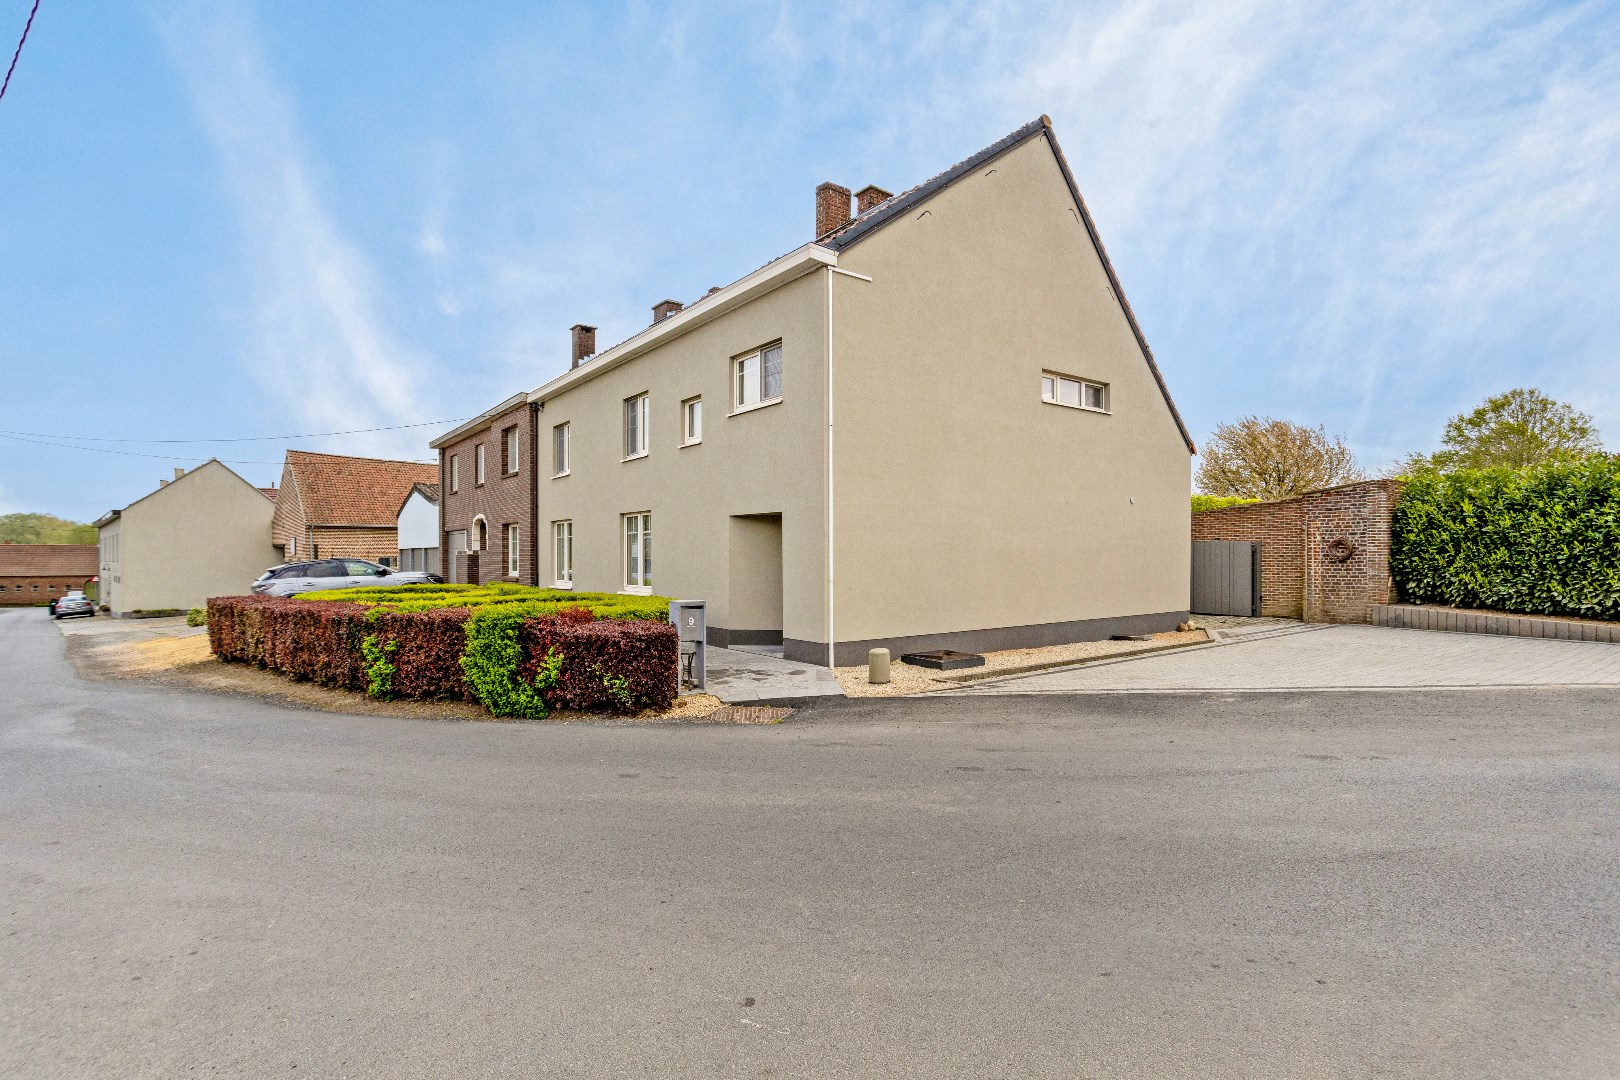 Maison a vendre | option - sous réserve À Sint-Pieters-Leeuw